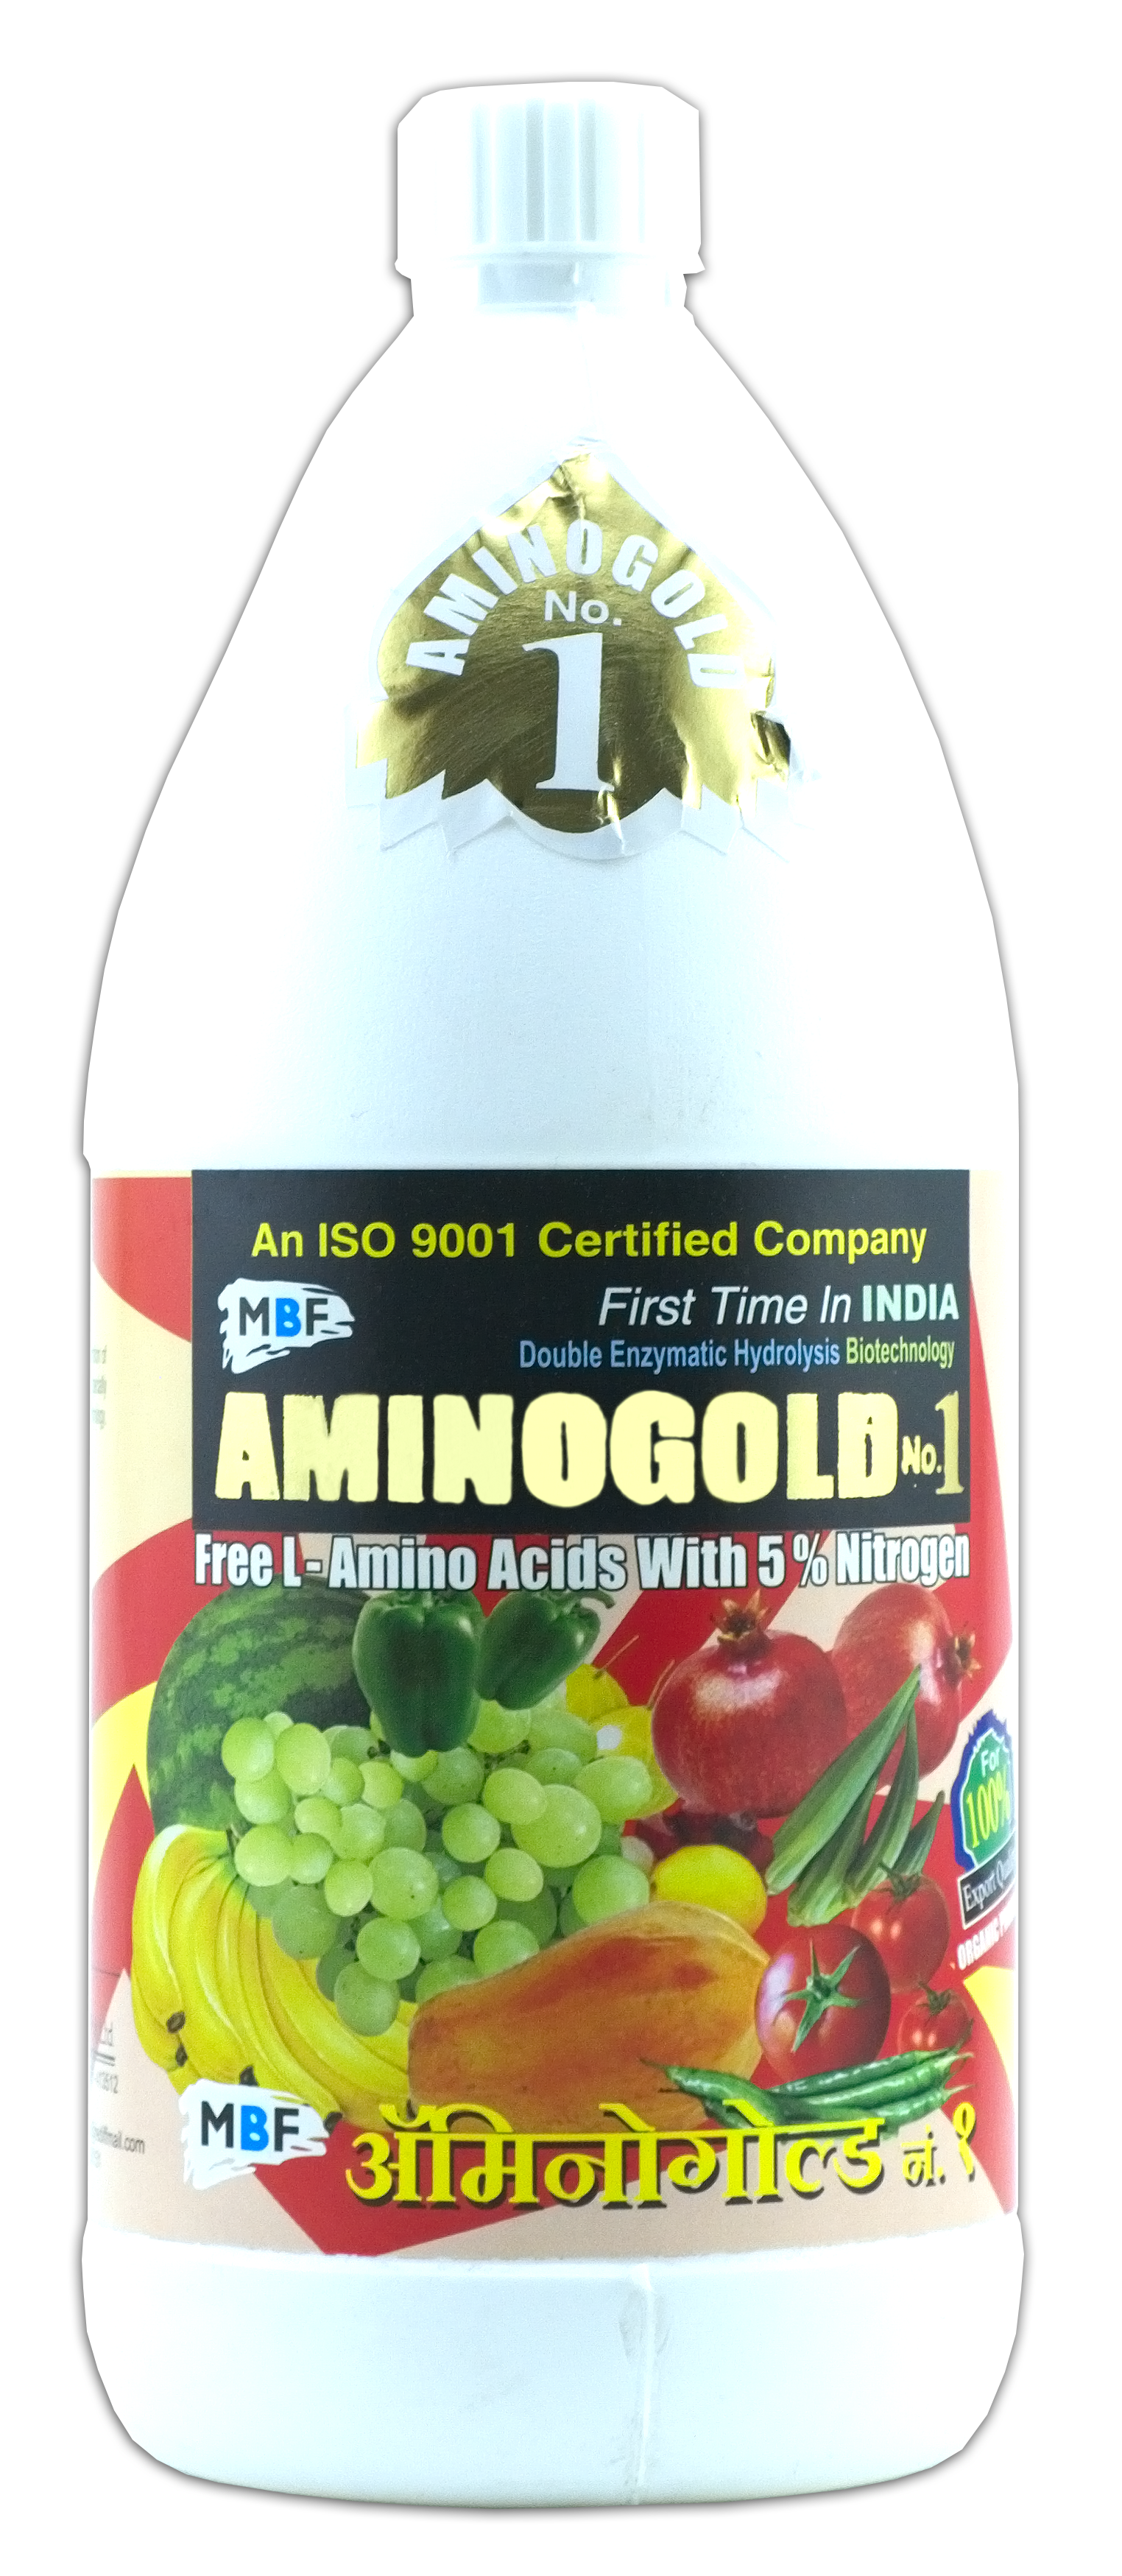 MBF Amino Gold No.1